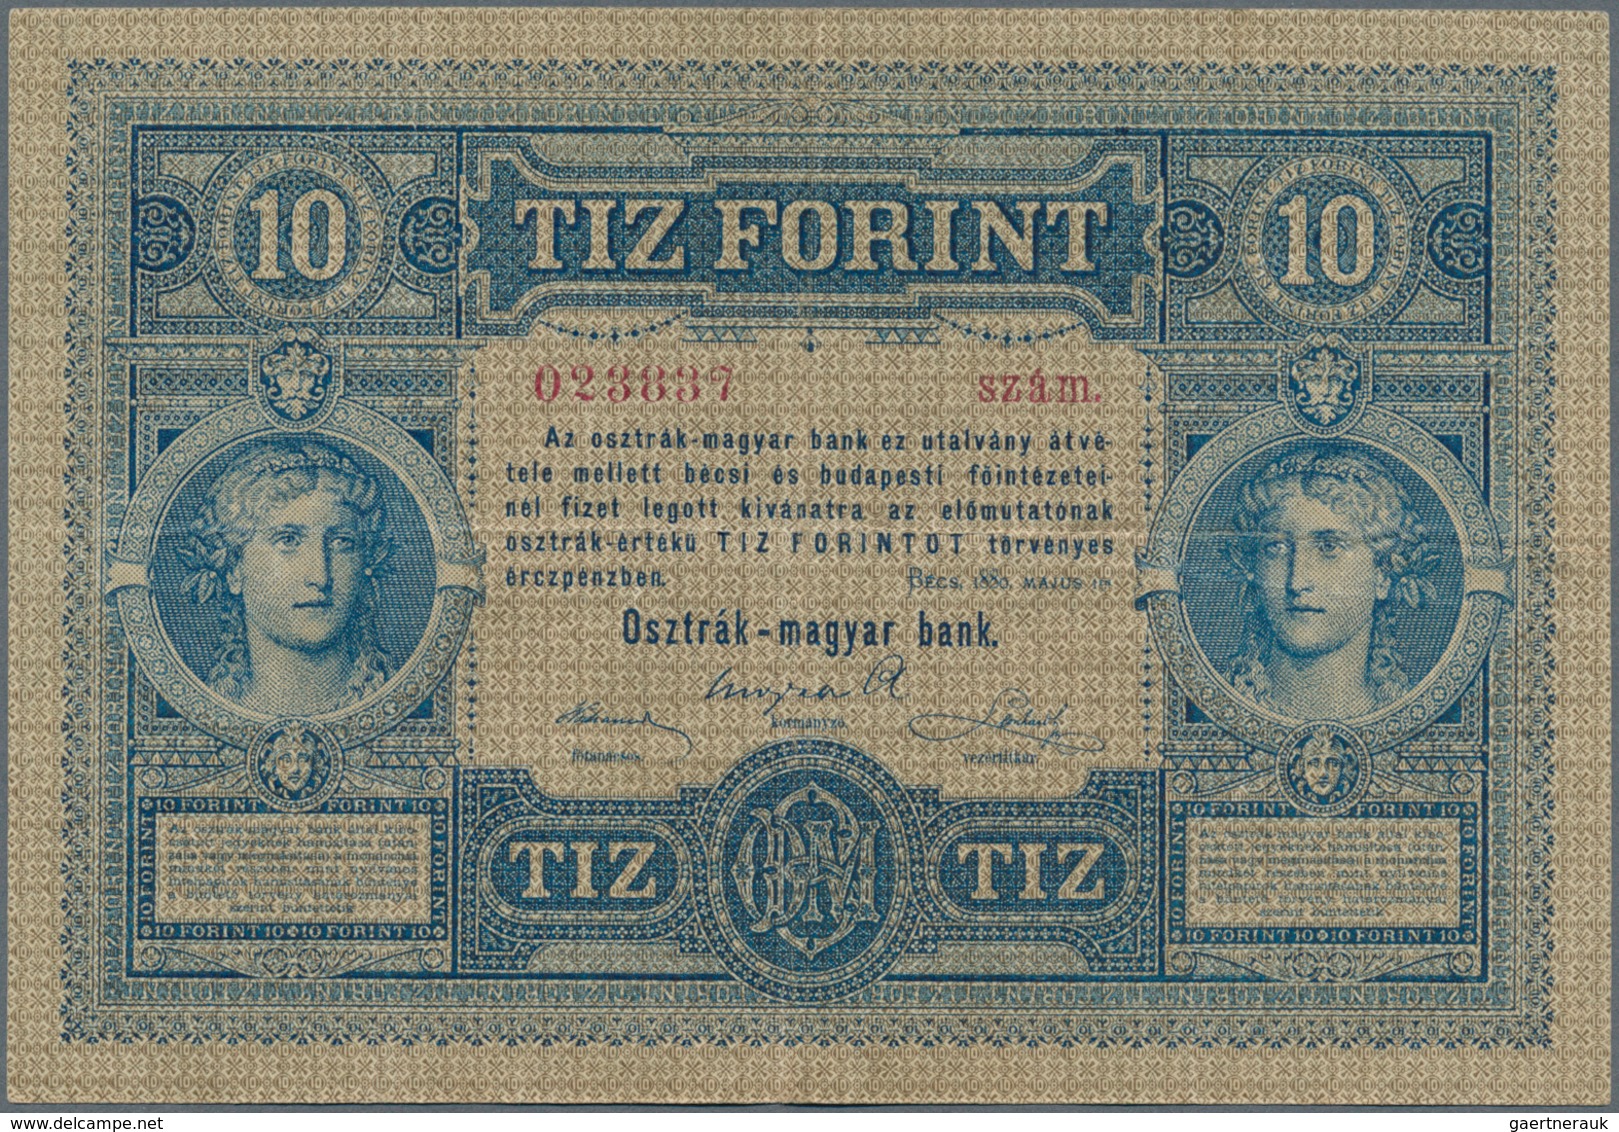 Austria / Österreich: 10 Gulden 1880 P. 1, S/N 023887, Rare Note In Nice Condition With Some Vertica - Oesterreich